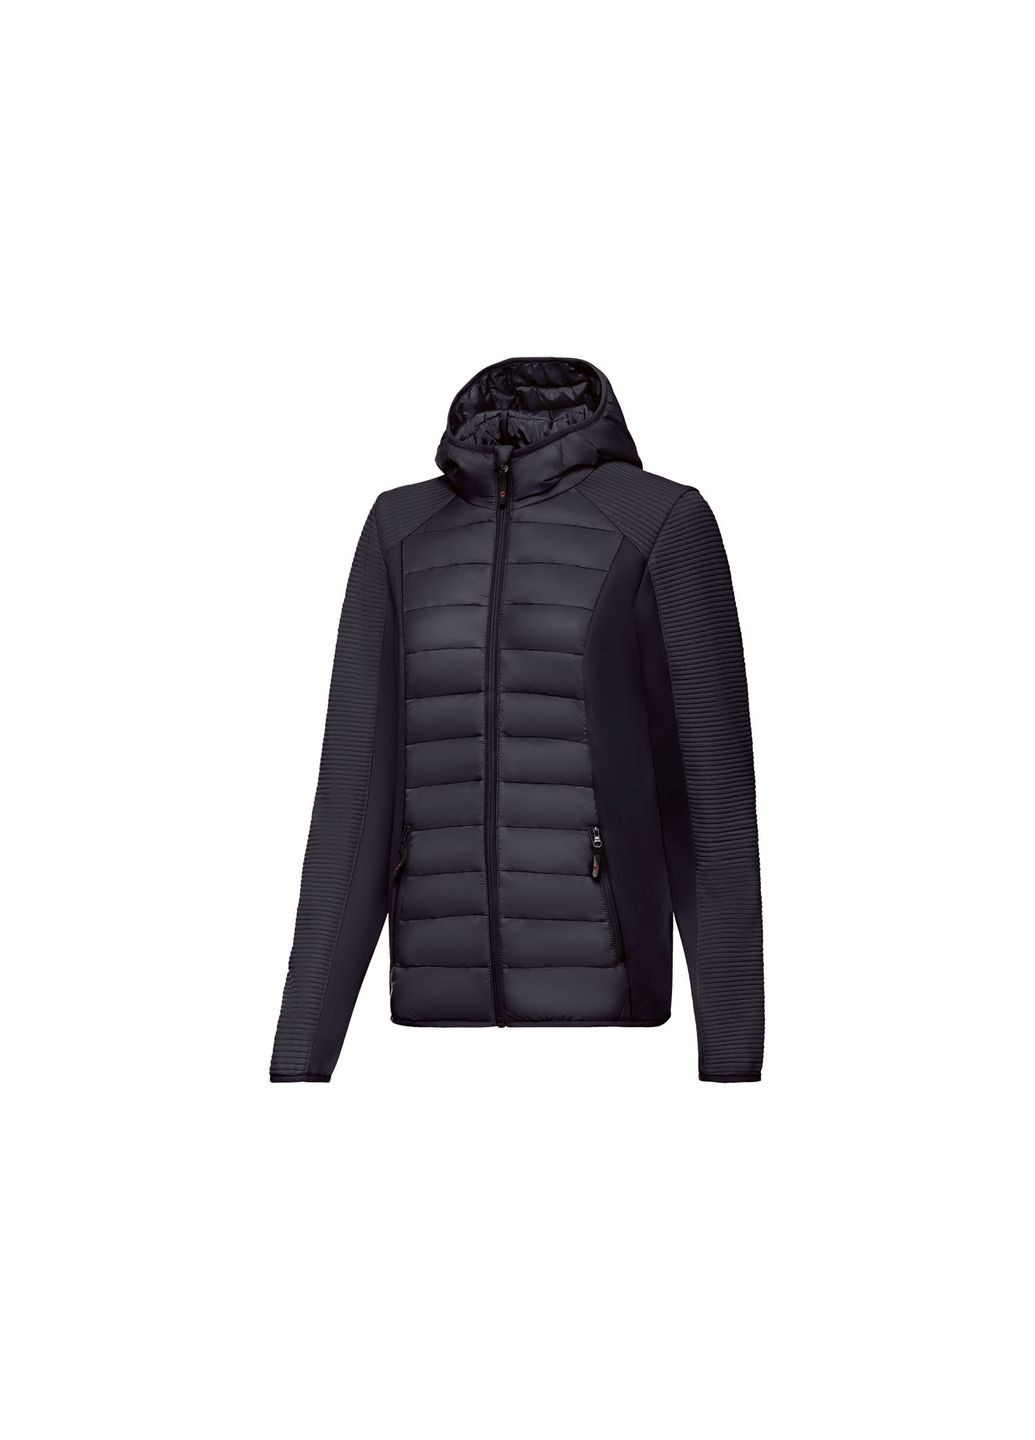 Черная демисезонная куртка демисезонная комбинированная oftshell / софтшелл для женщины 370200 s Crivit